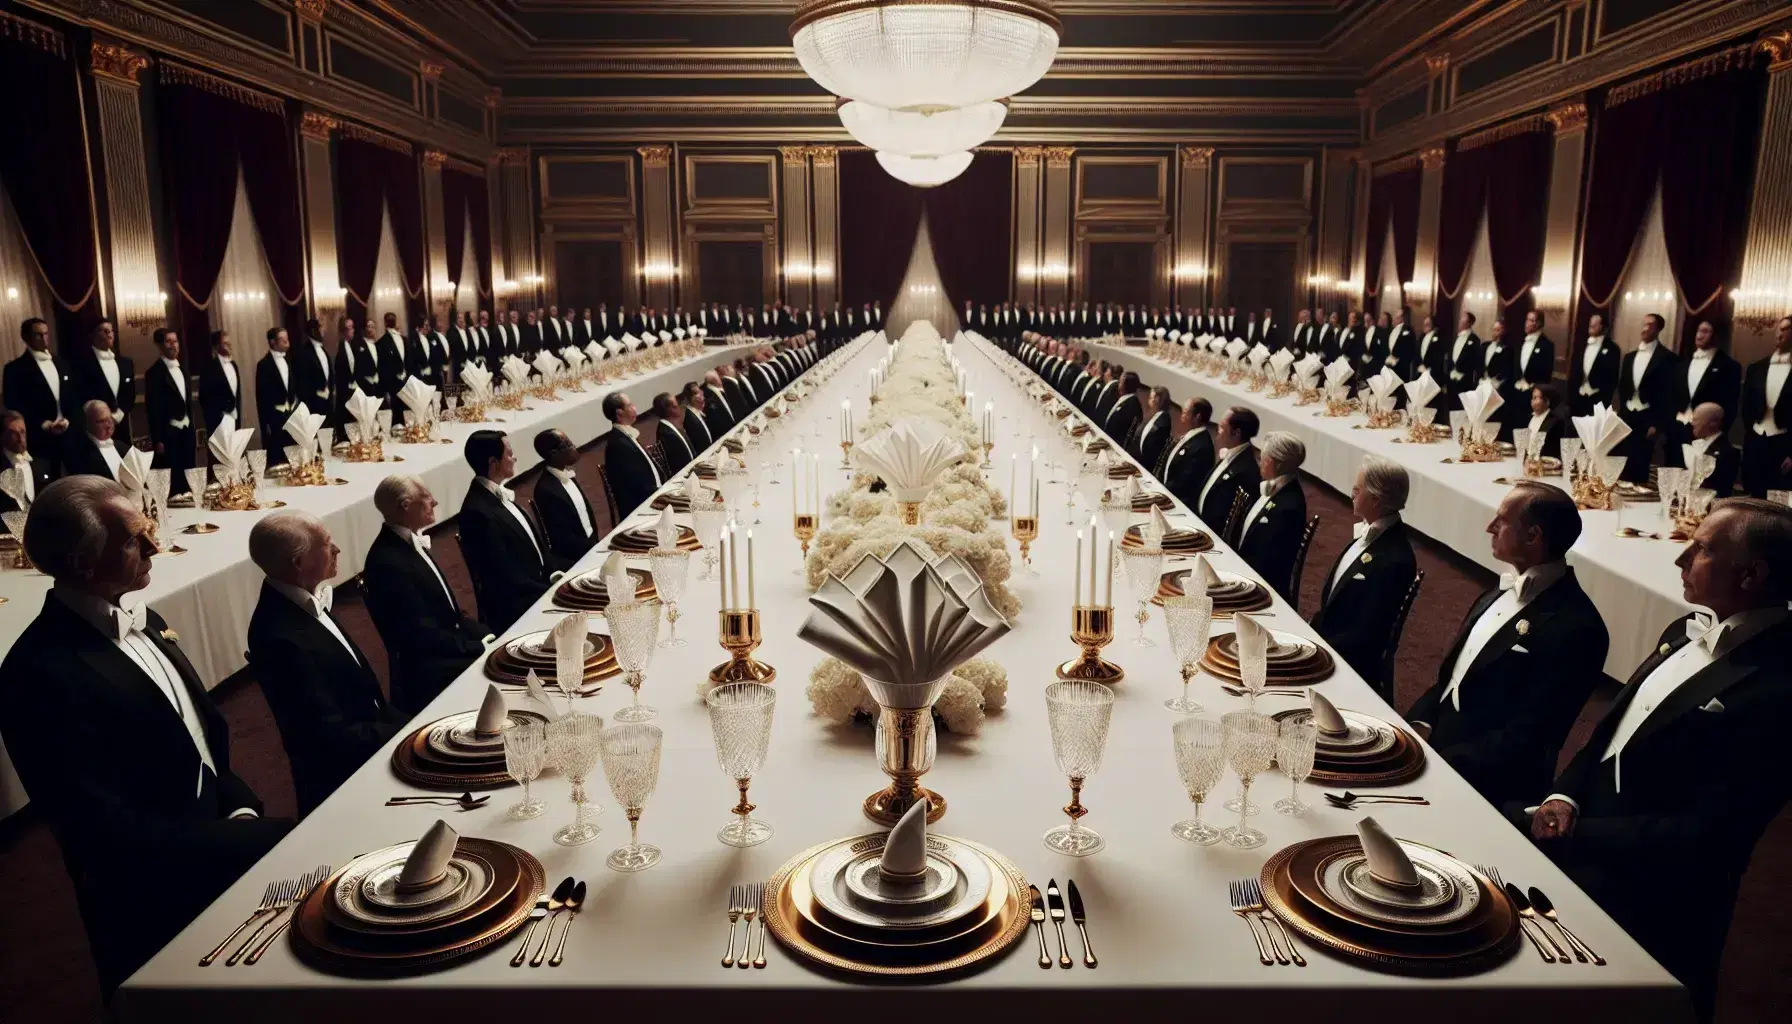 Mesa elegante con mantel blanco, platos de porcelana con bordes dorados y cristalería alineada, rodeada de sillas de terciopelo rojo y personas vestidas formalmente en un salón de eventos iluminado por candelabros de cristal.